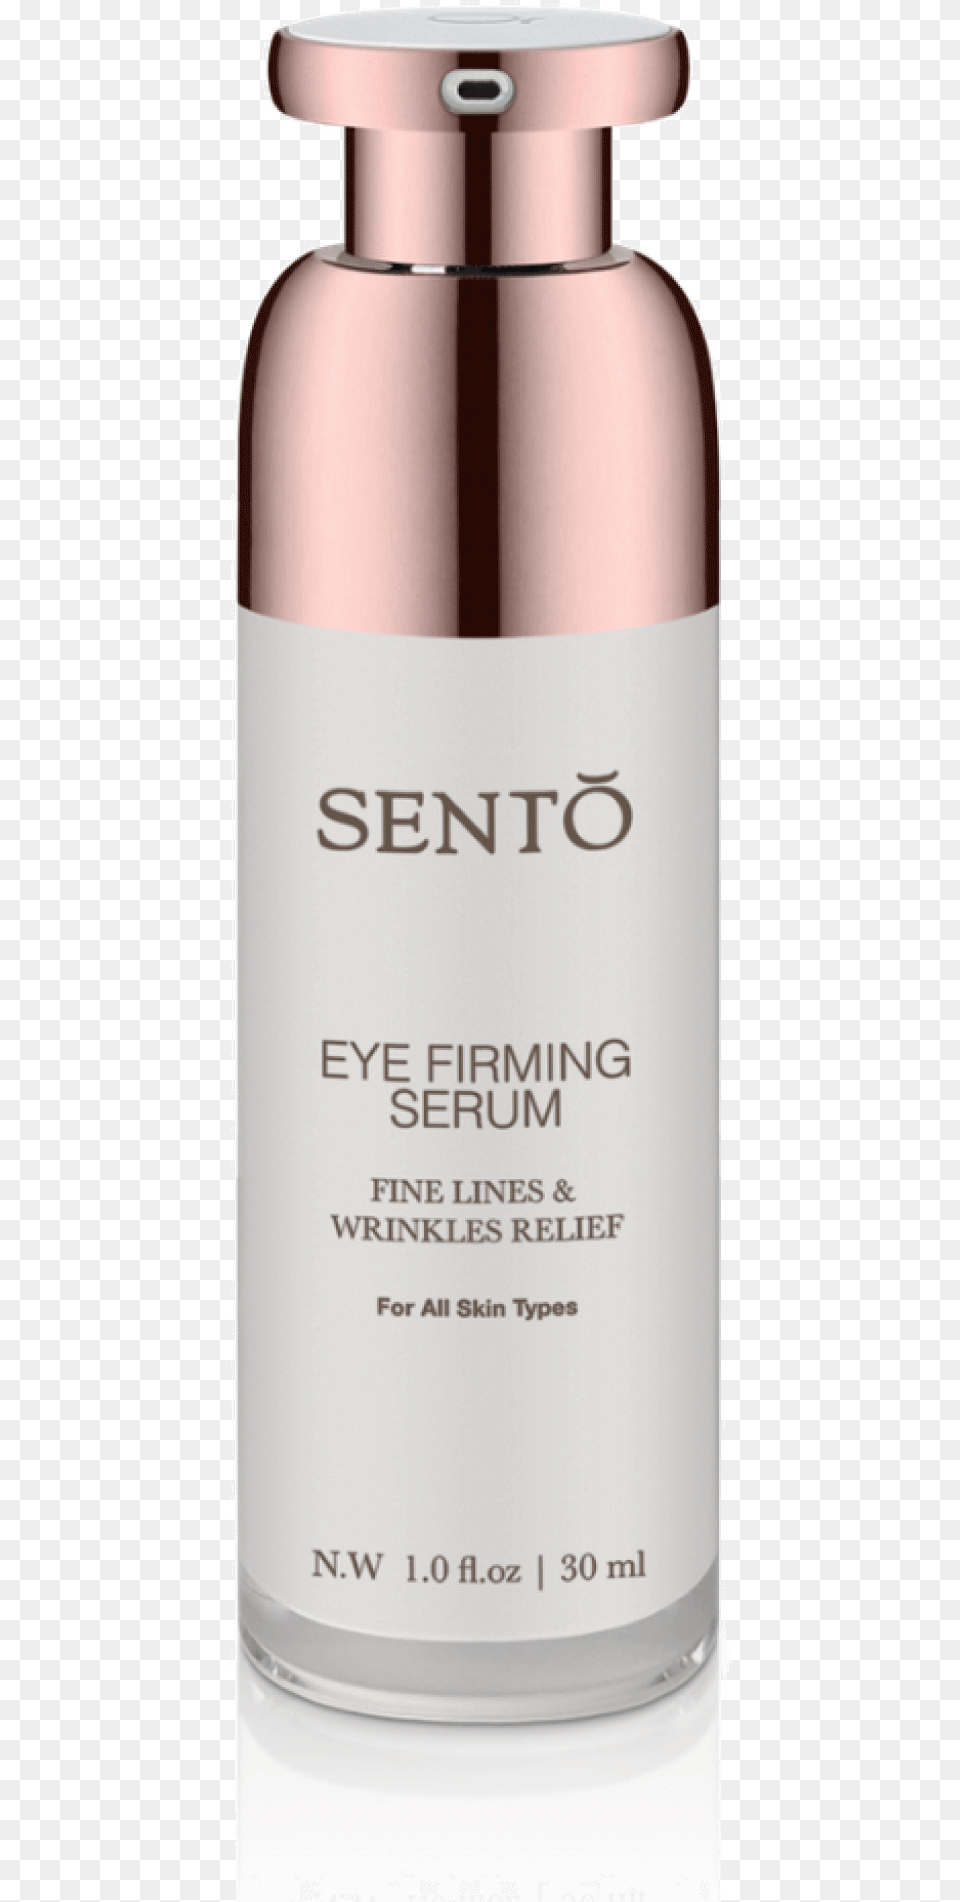 Eye Firming Serum Cosmetics, Bottle, Perfume, Jar Free Png